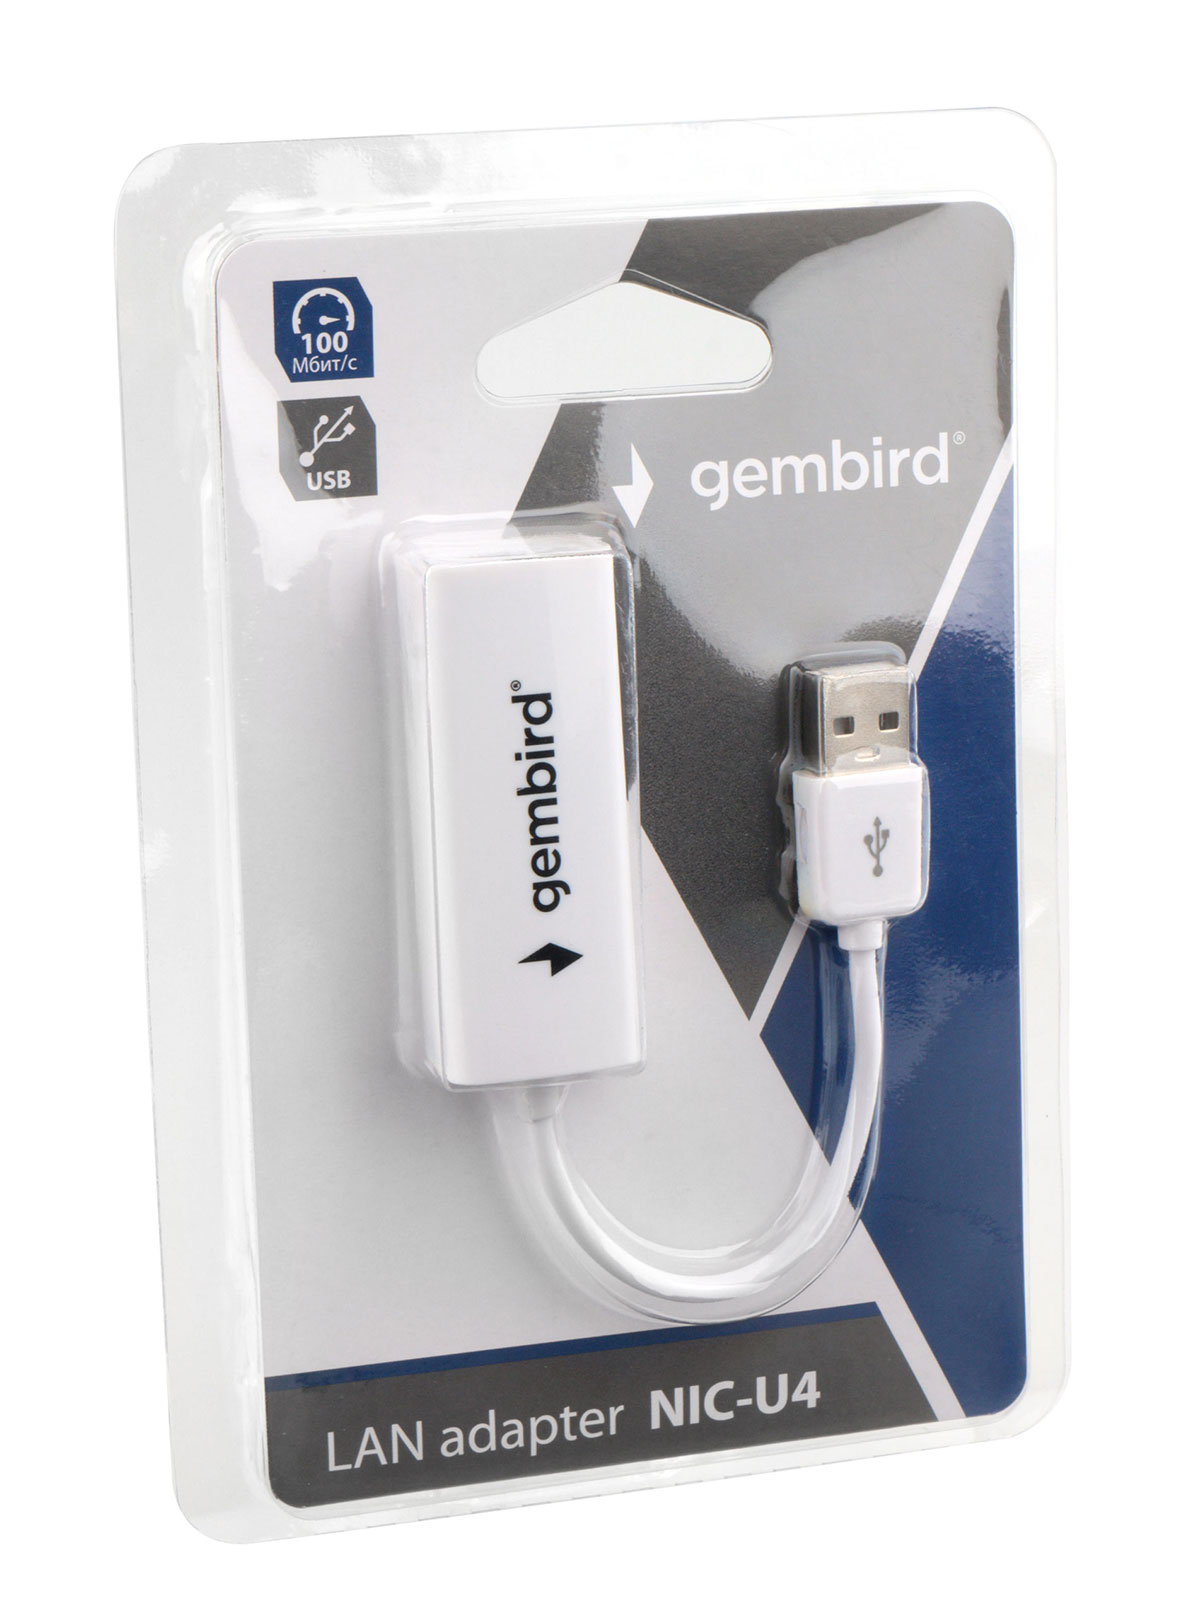 Gembird NIC-U4